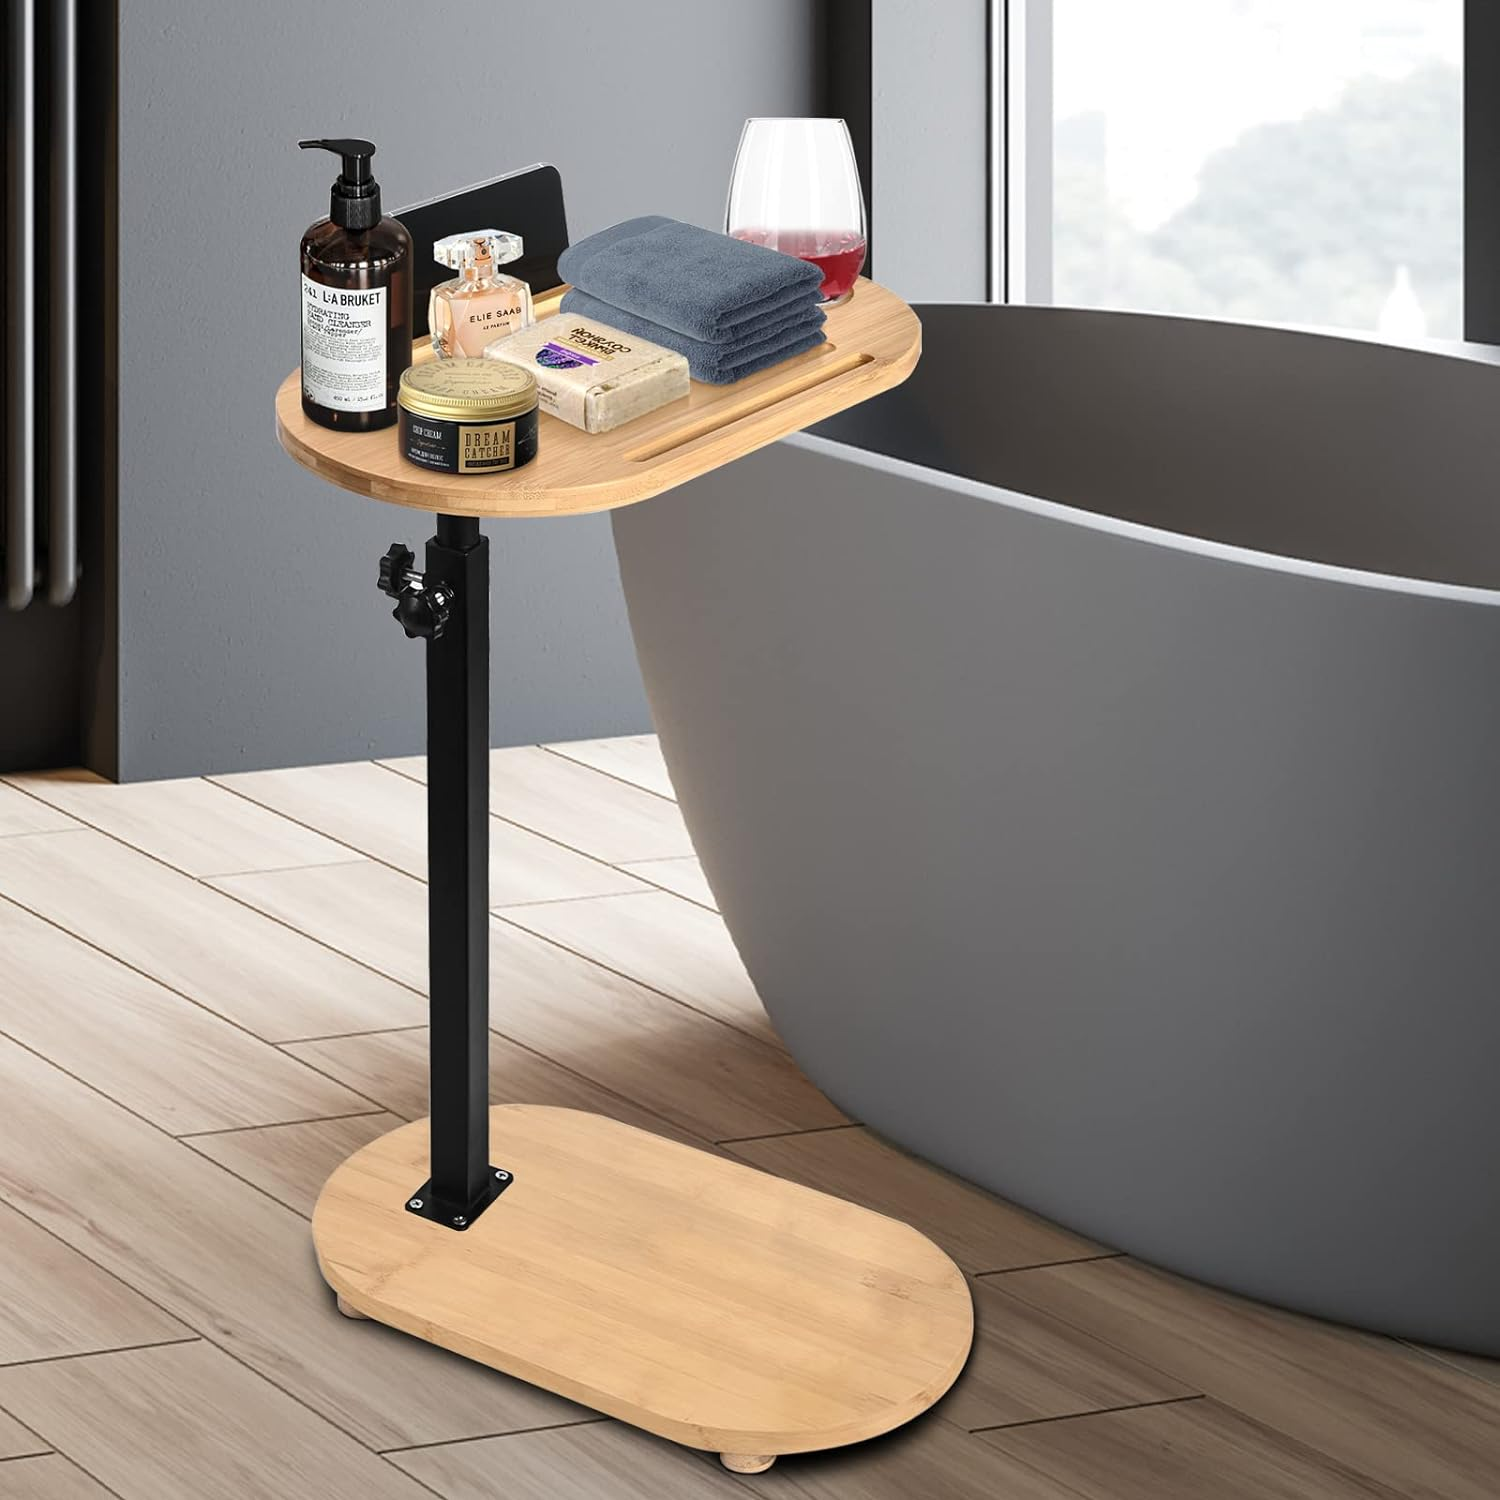 高端浴缸边置物架木质高级梳化旁边桌沙发上前面的小茶几托盘日系